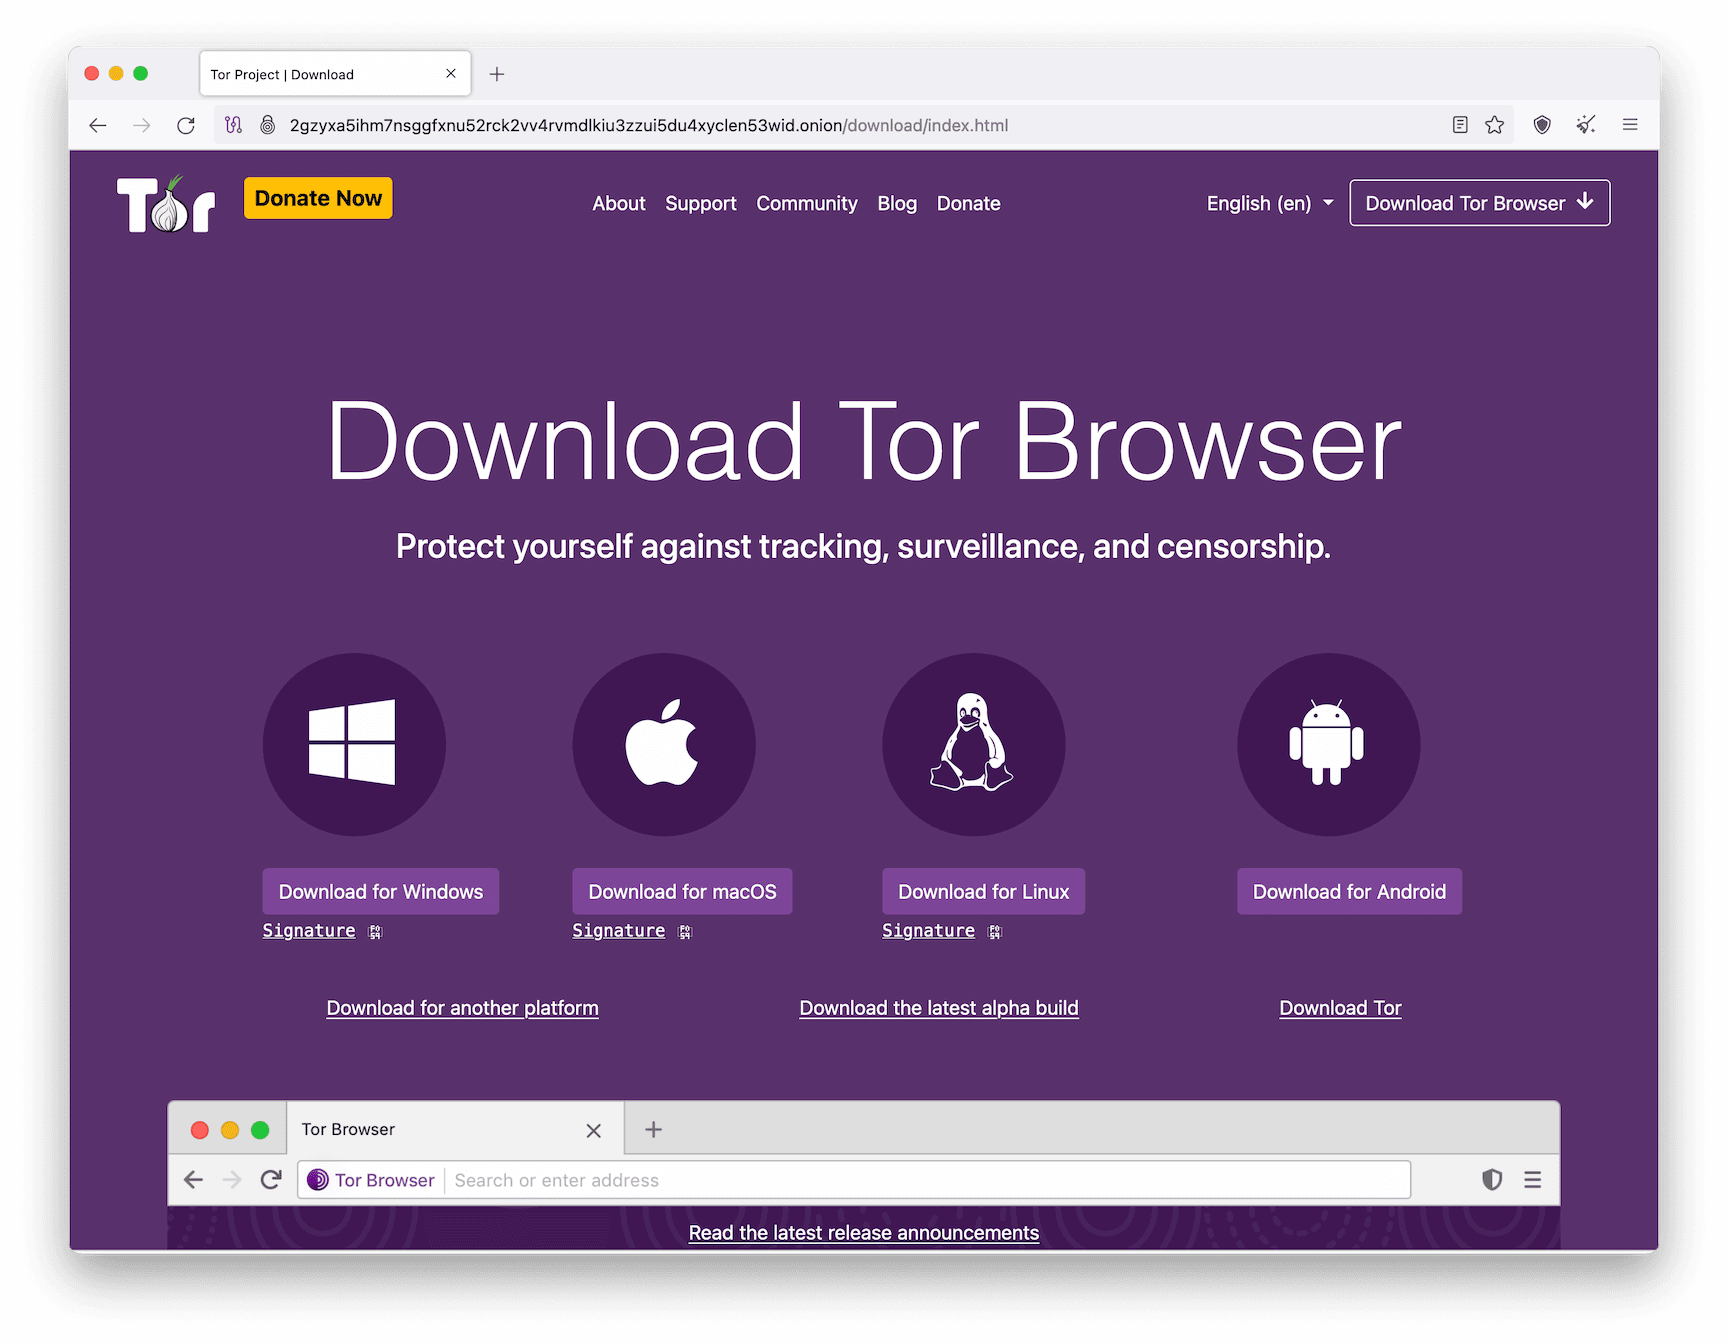 Les différents appareils sur lesquels le navigateur Tor est disponible.